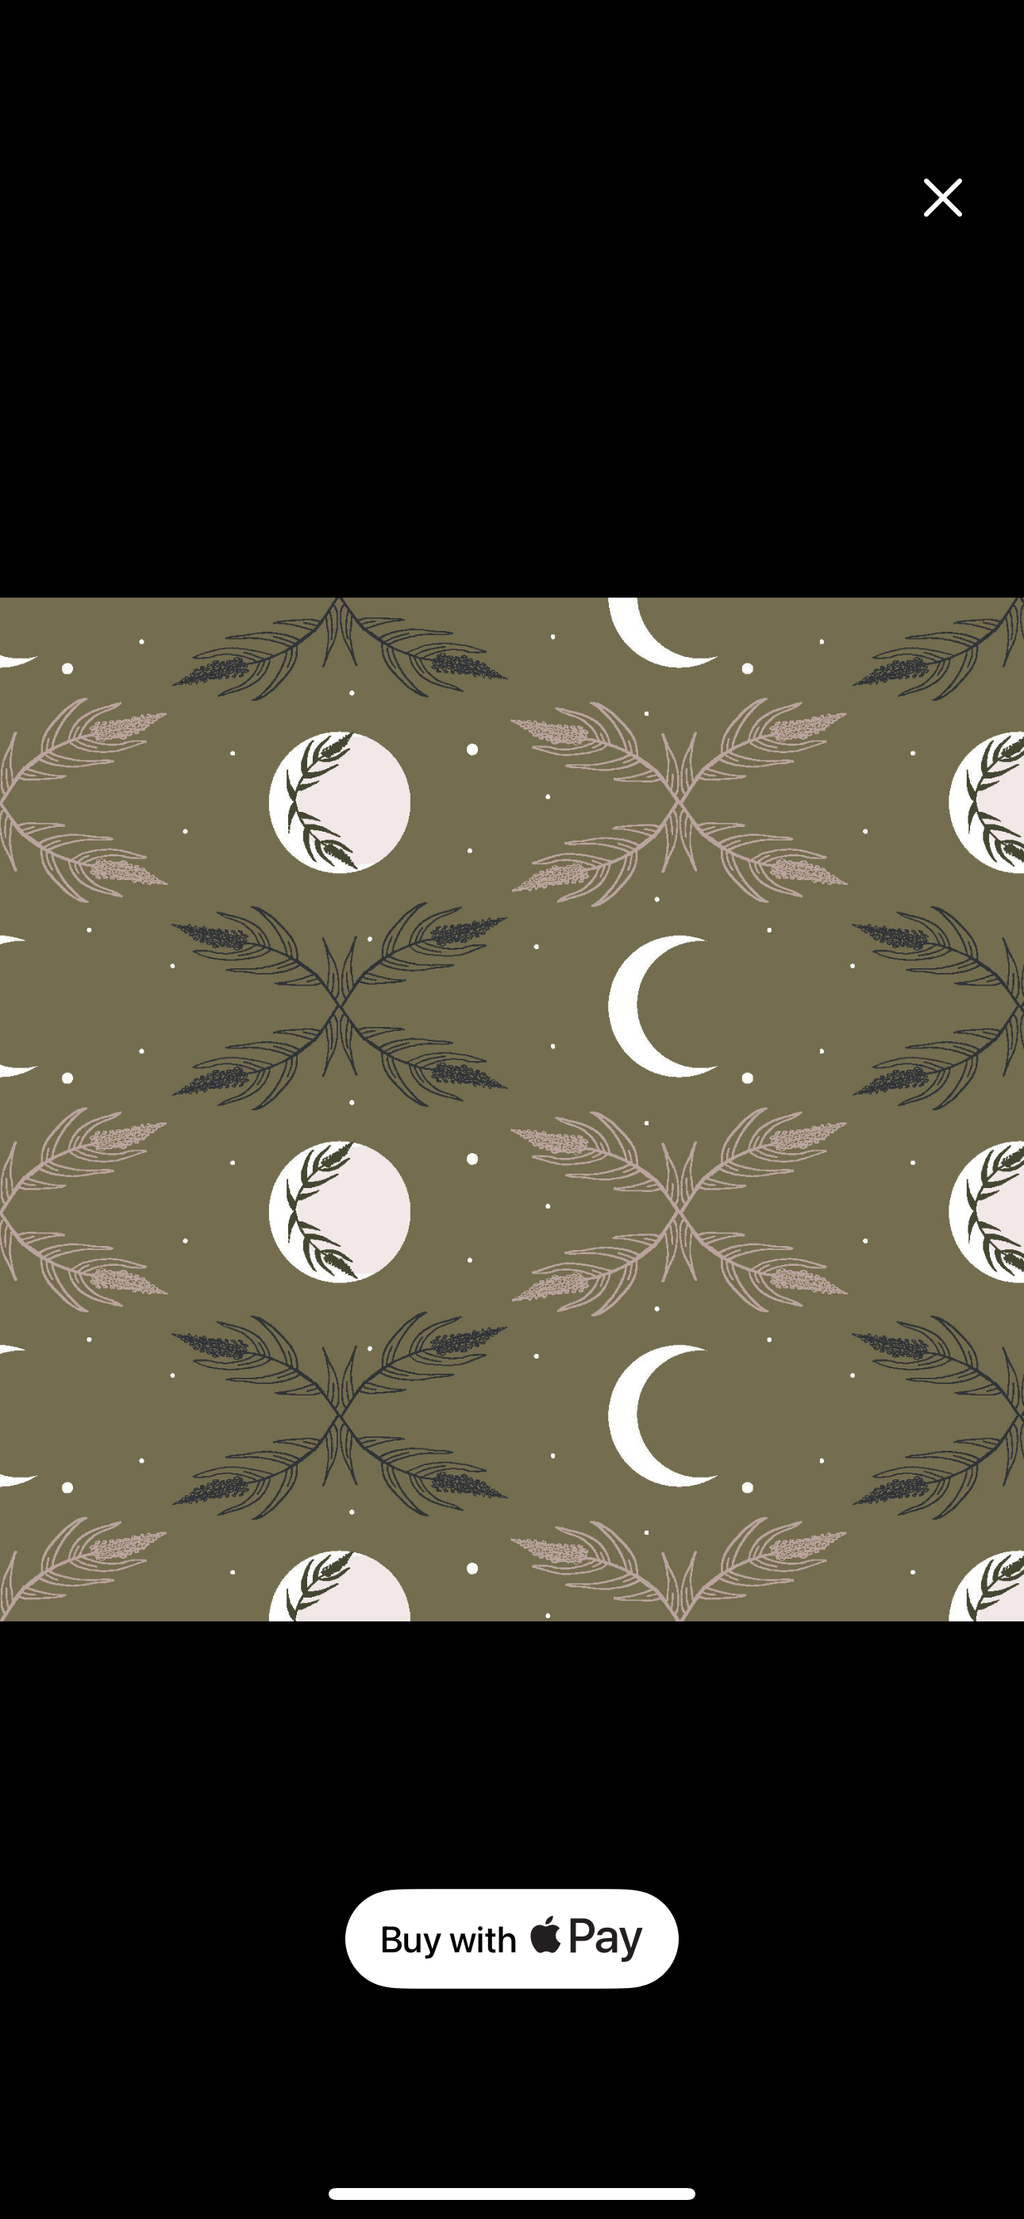 4 set of fabric napkins - harvest moon dark olive